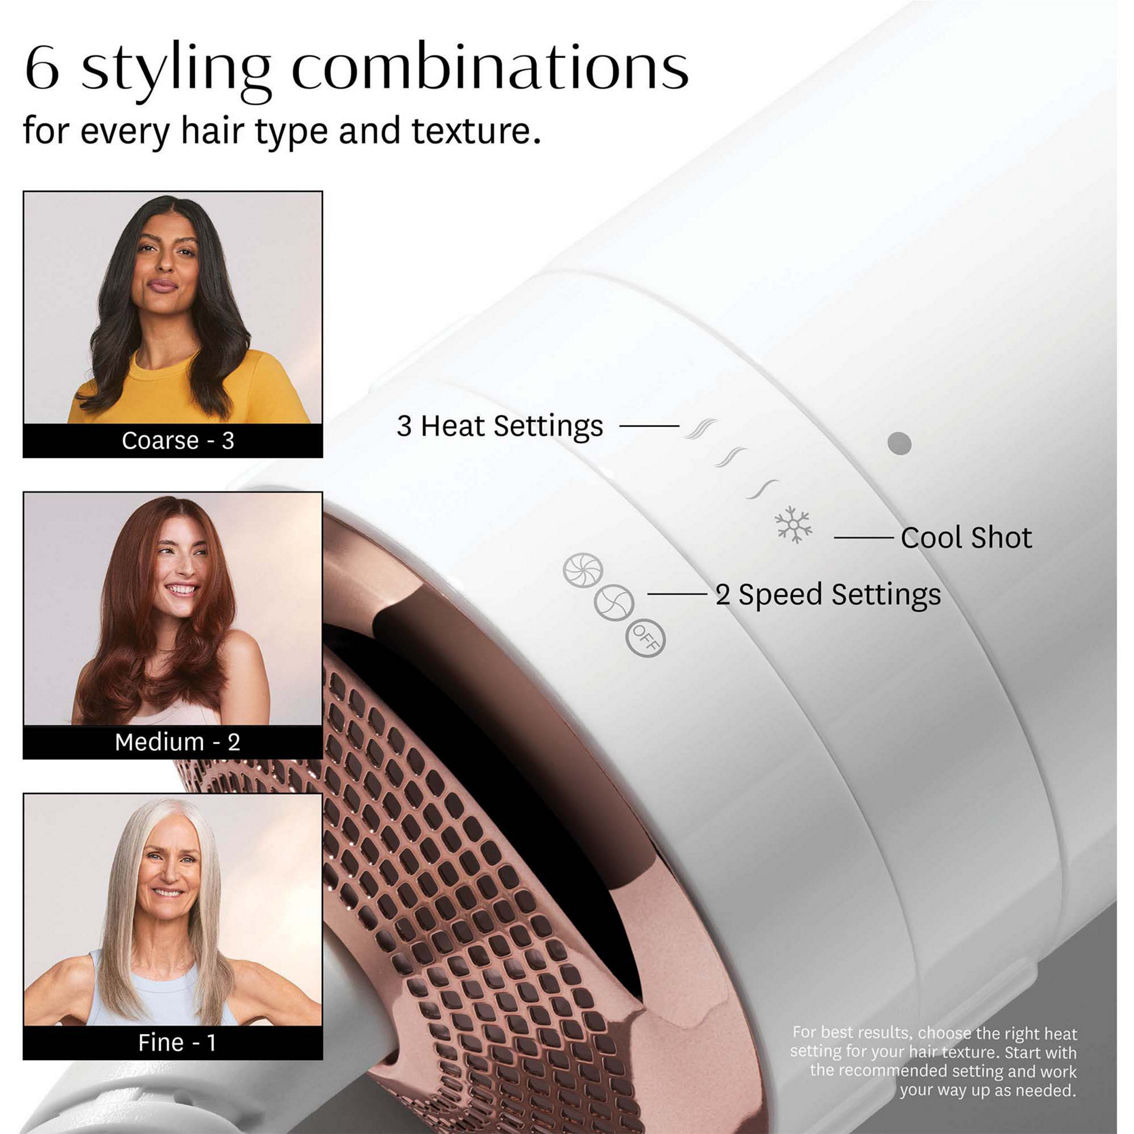 T3 AireBrush One Step Smoothing and Volumizing Hair Dryer Brush - Image 5 of 10